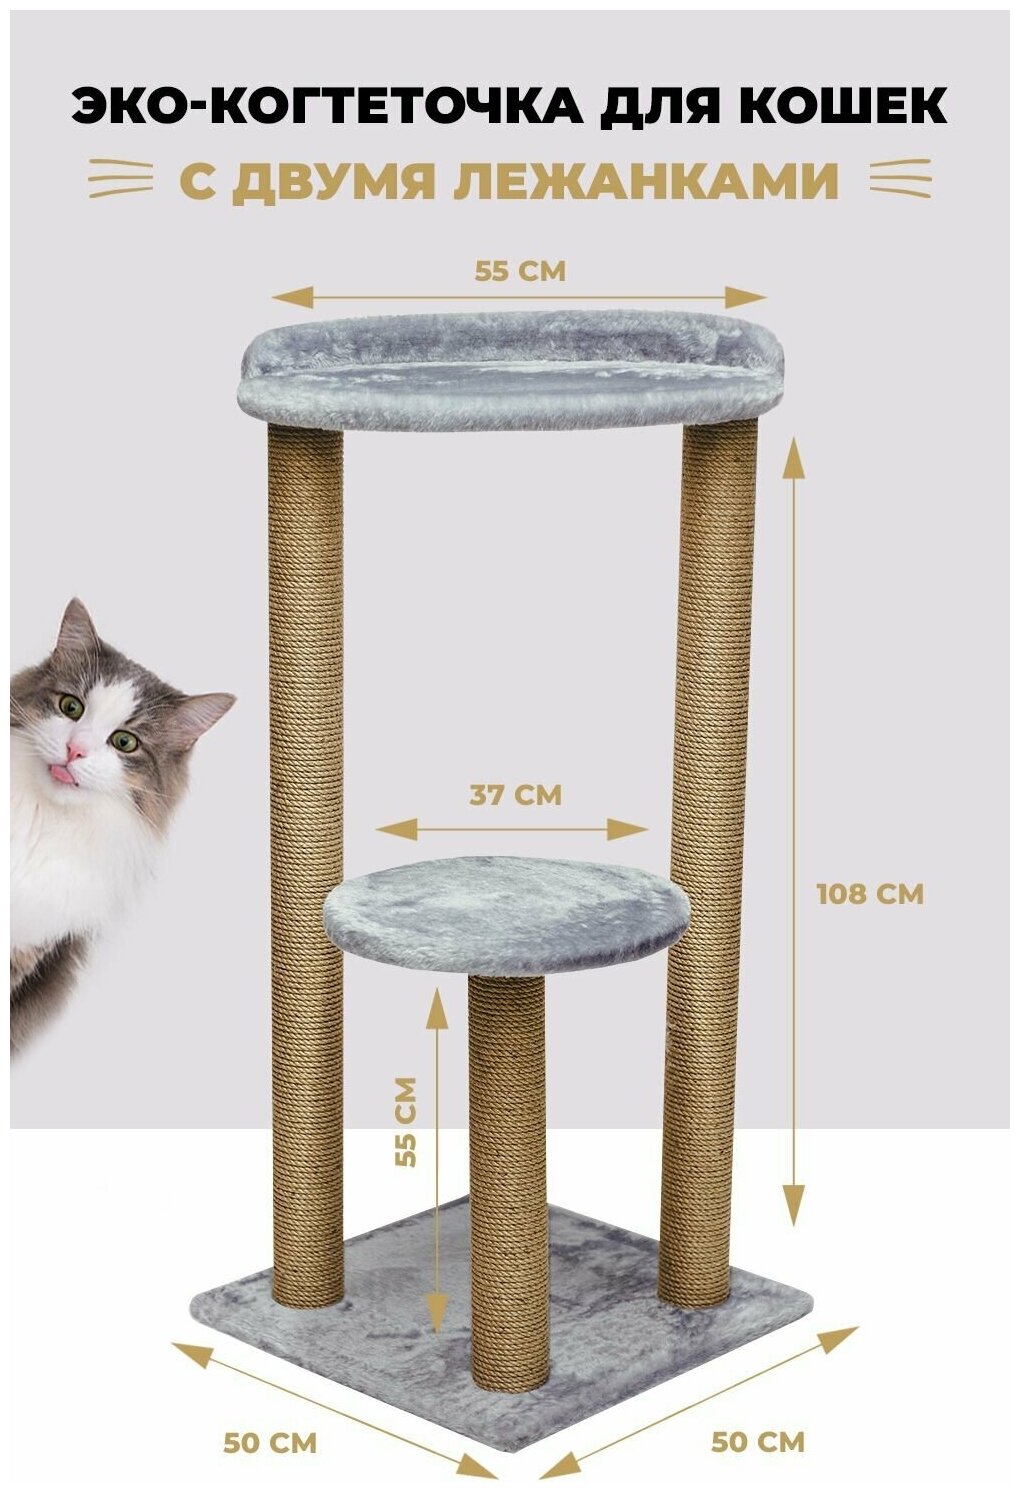 Когтеточка комплекс для кошек "Уют" высокий столбик (3шт.) с лежанкой (2шт.)